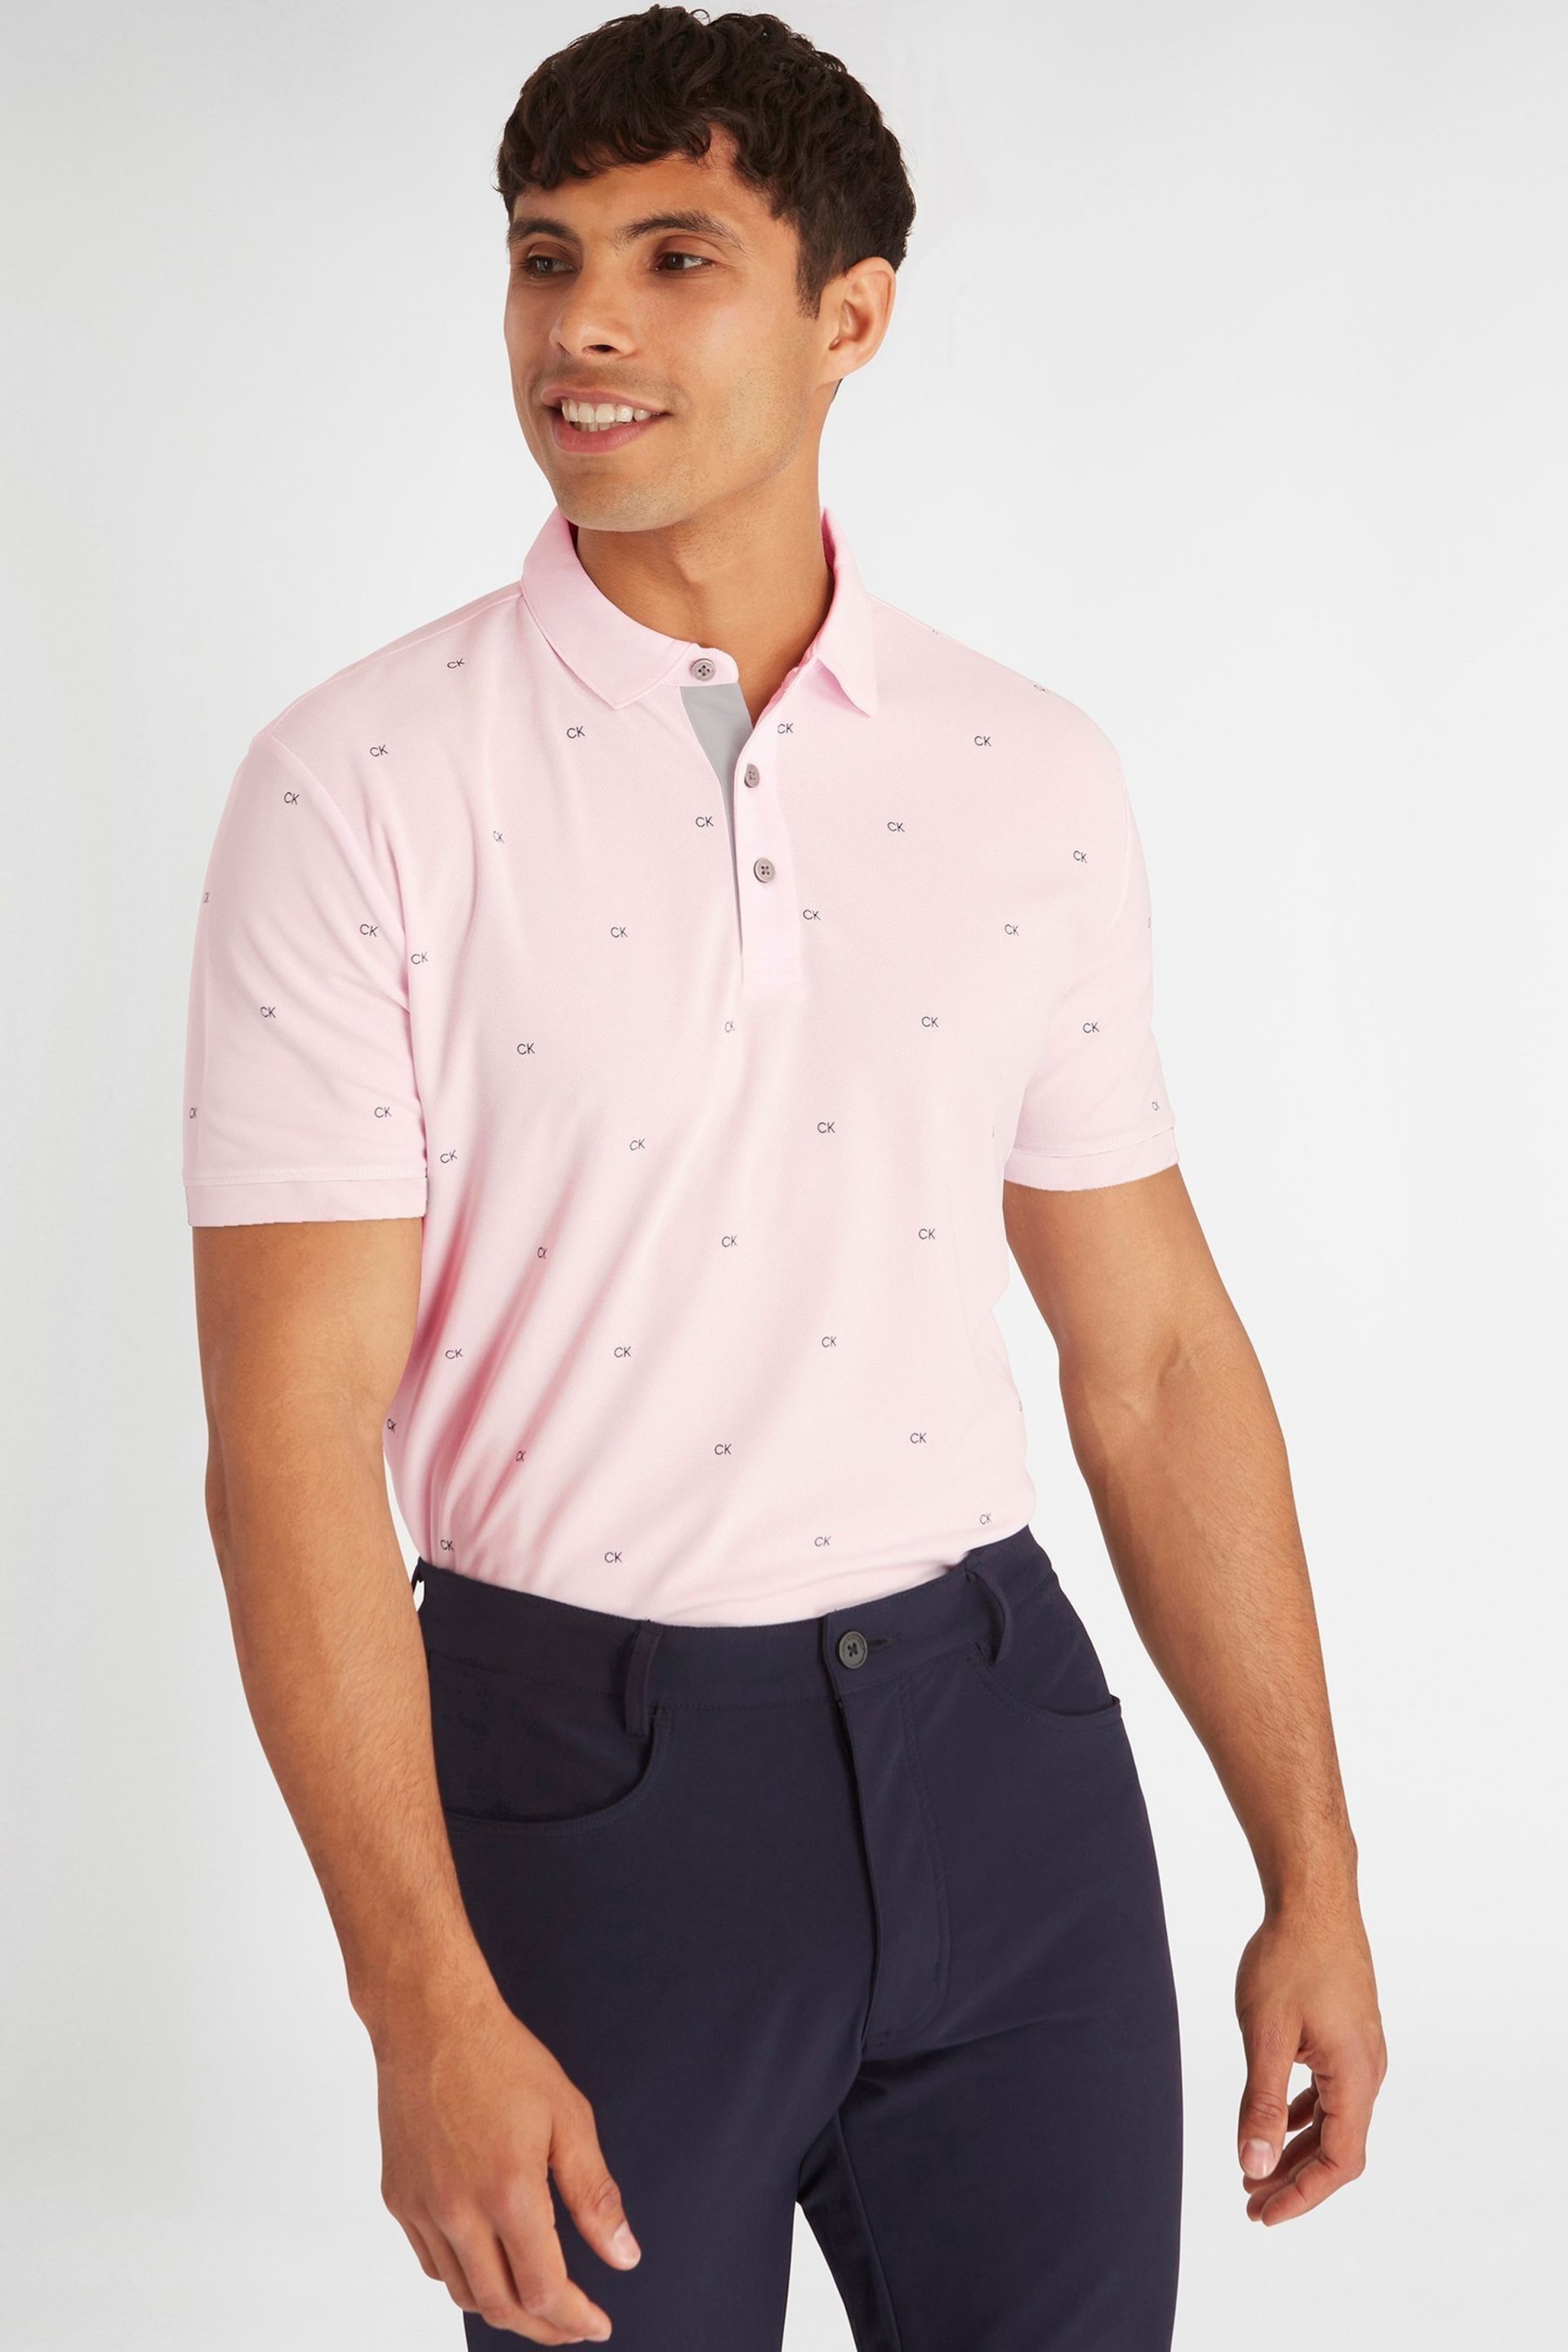 Calvin Klein Golf Blue Monogram Polo Shirt - Image 1 of 8